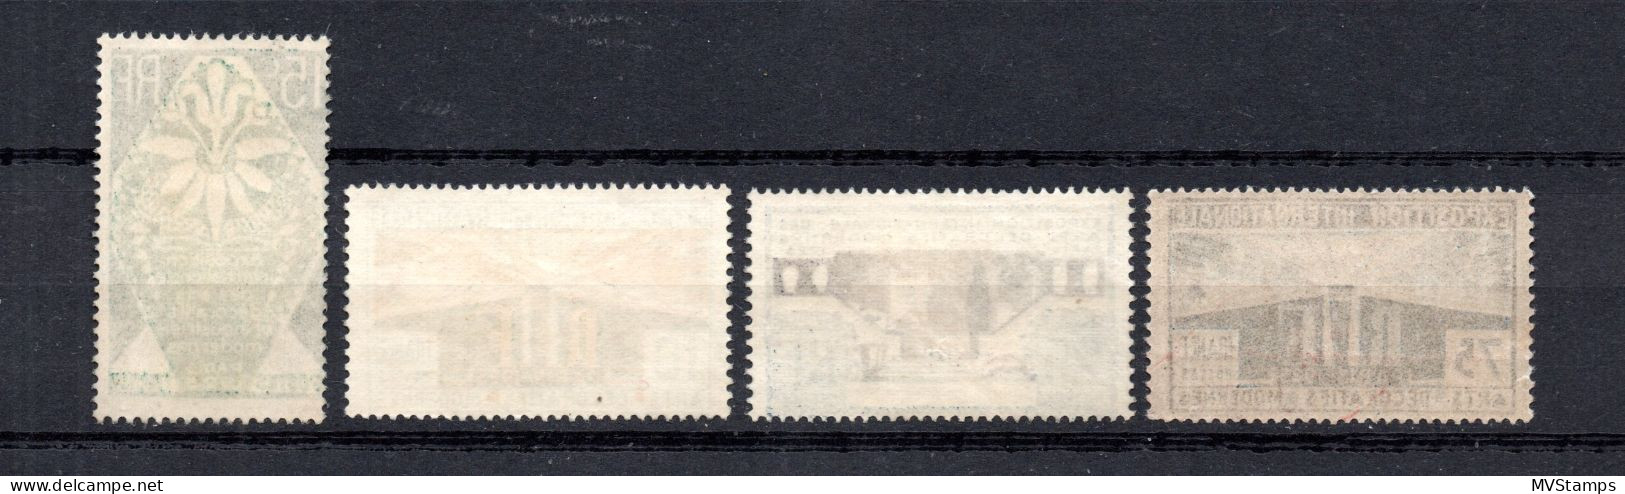 Frankreich 1925 Satz 177/80 Kunsewerbeausstellung Paris Postfrisch - Neufs